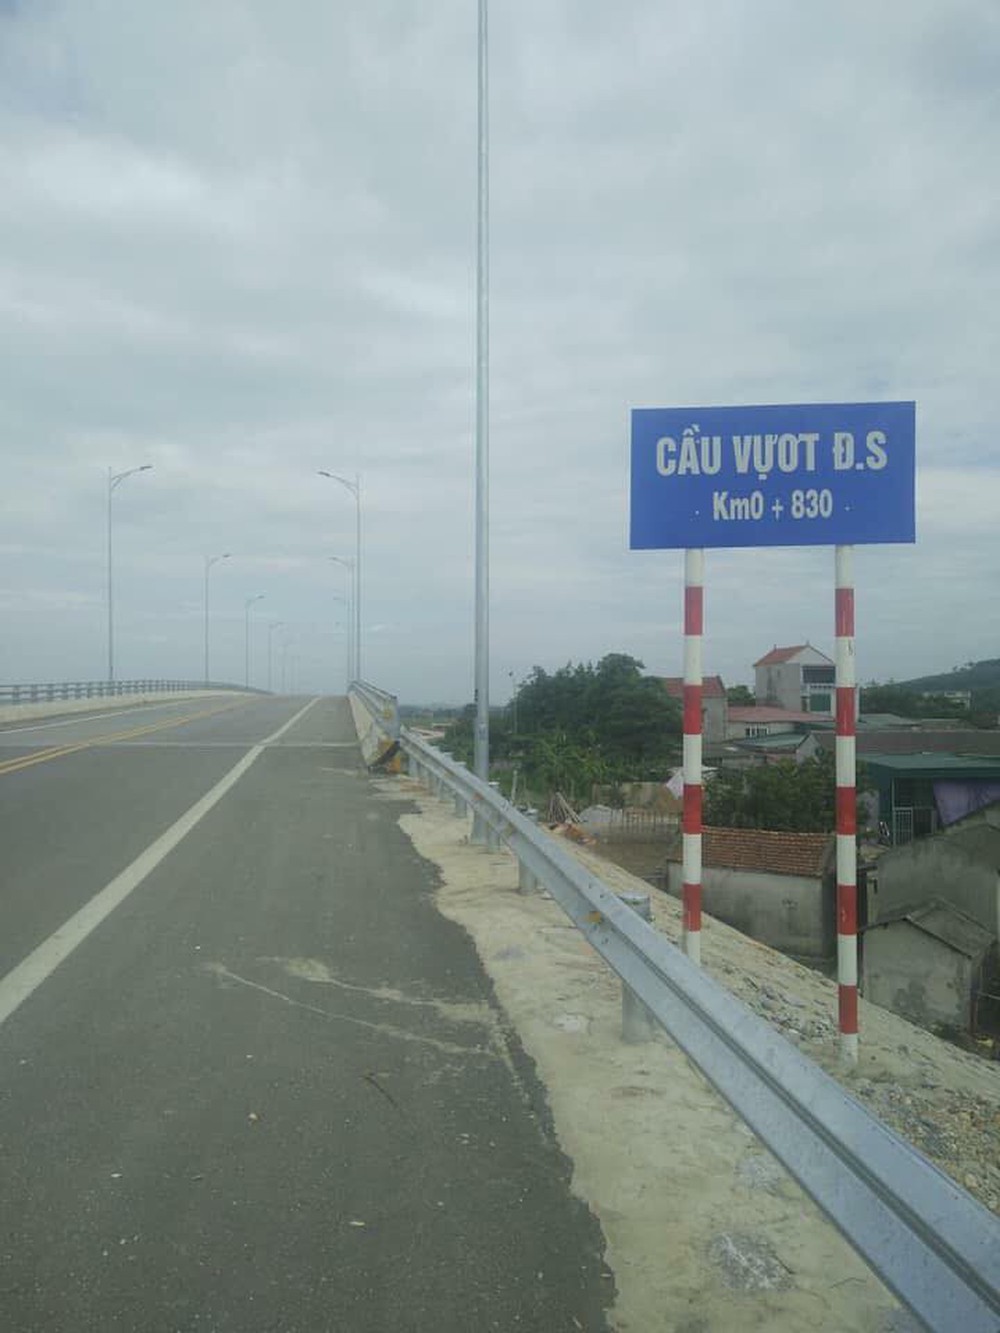 Xôn xao về cây cầu vượt cho người đi bộ qua đường sắt ở Thanh Hóa - Ảnh 2.